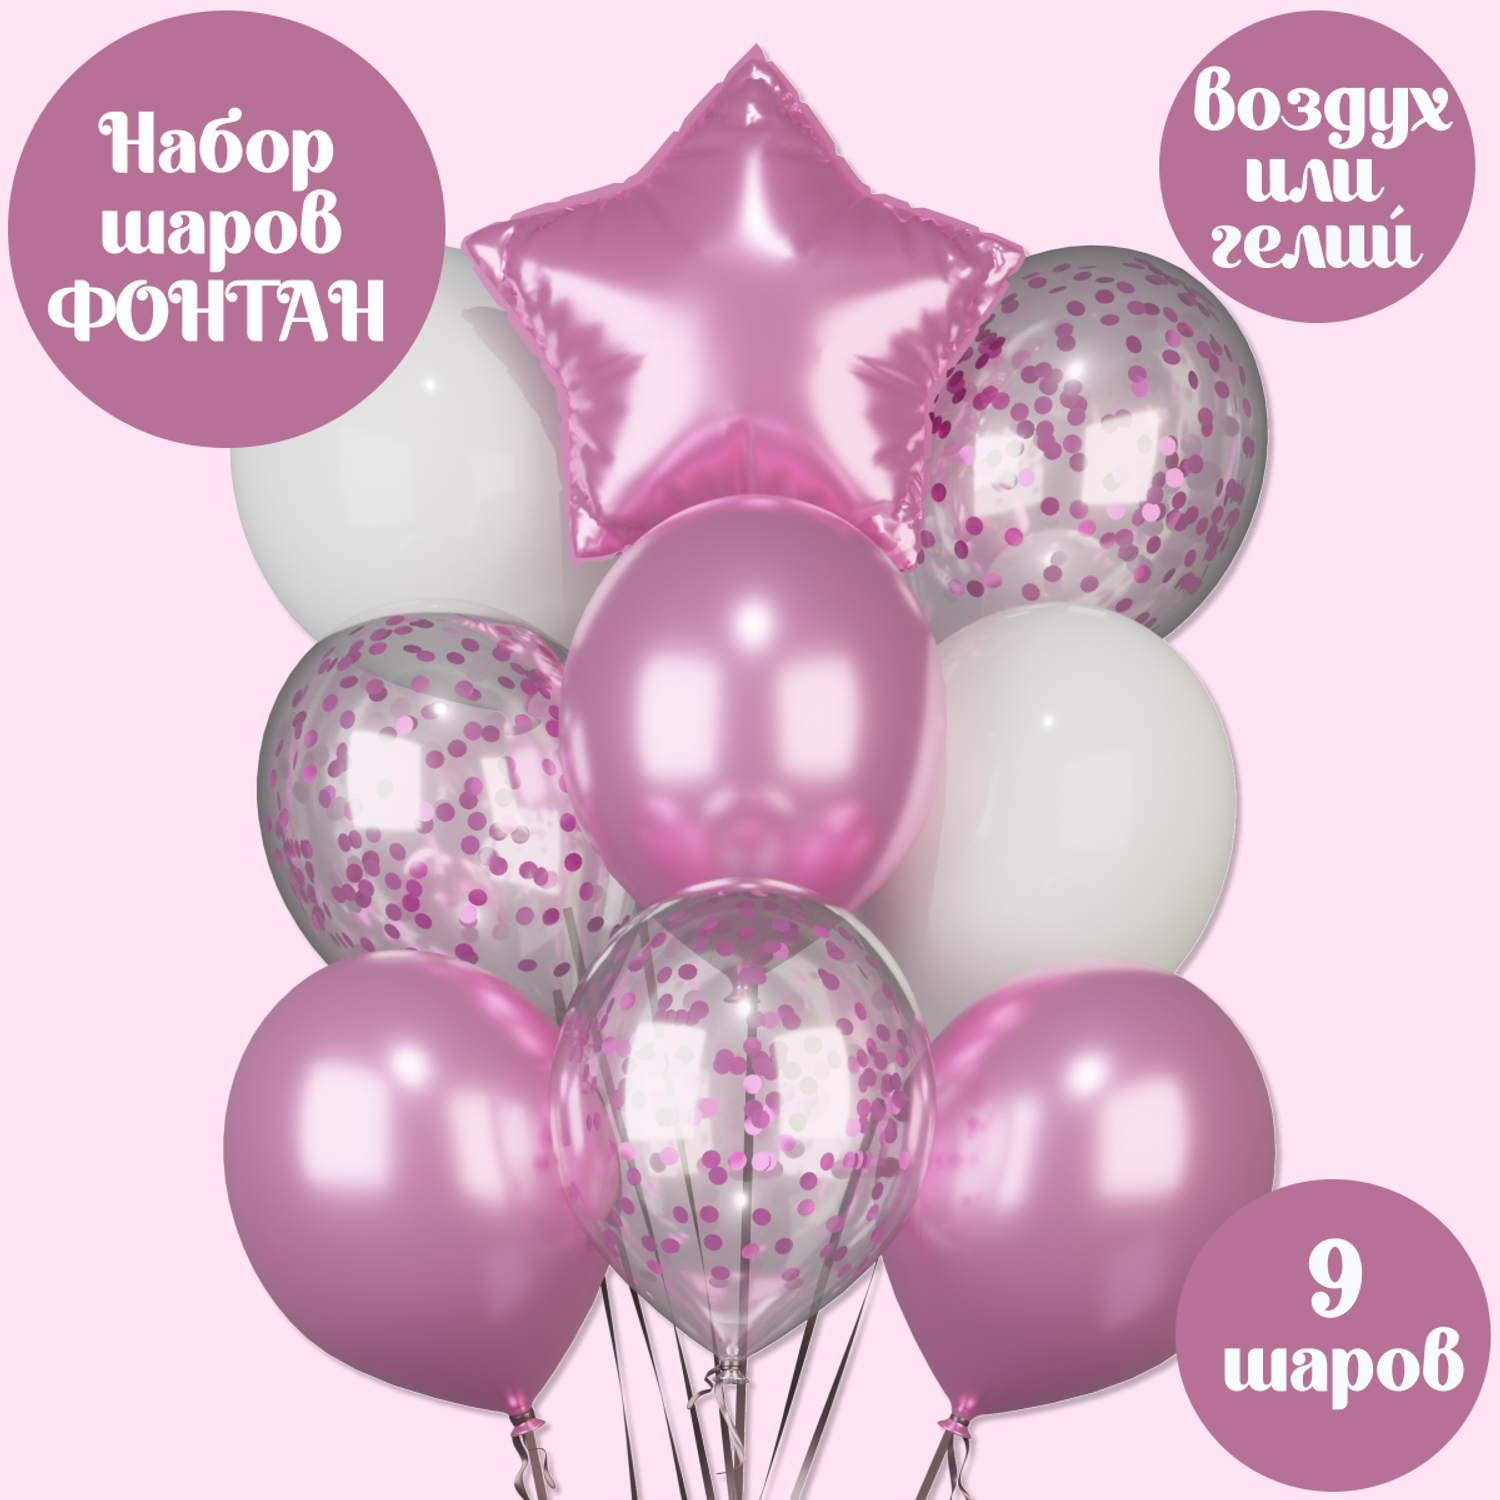 Все для праздника и оформление дня рождения в Нижнем Новгороде